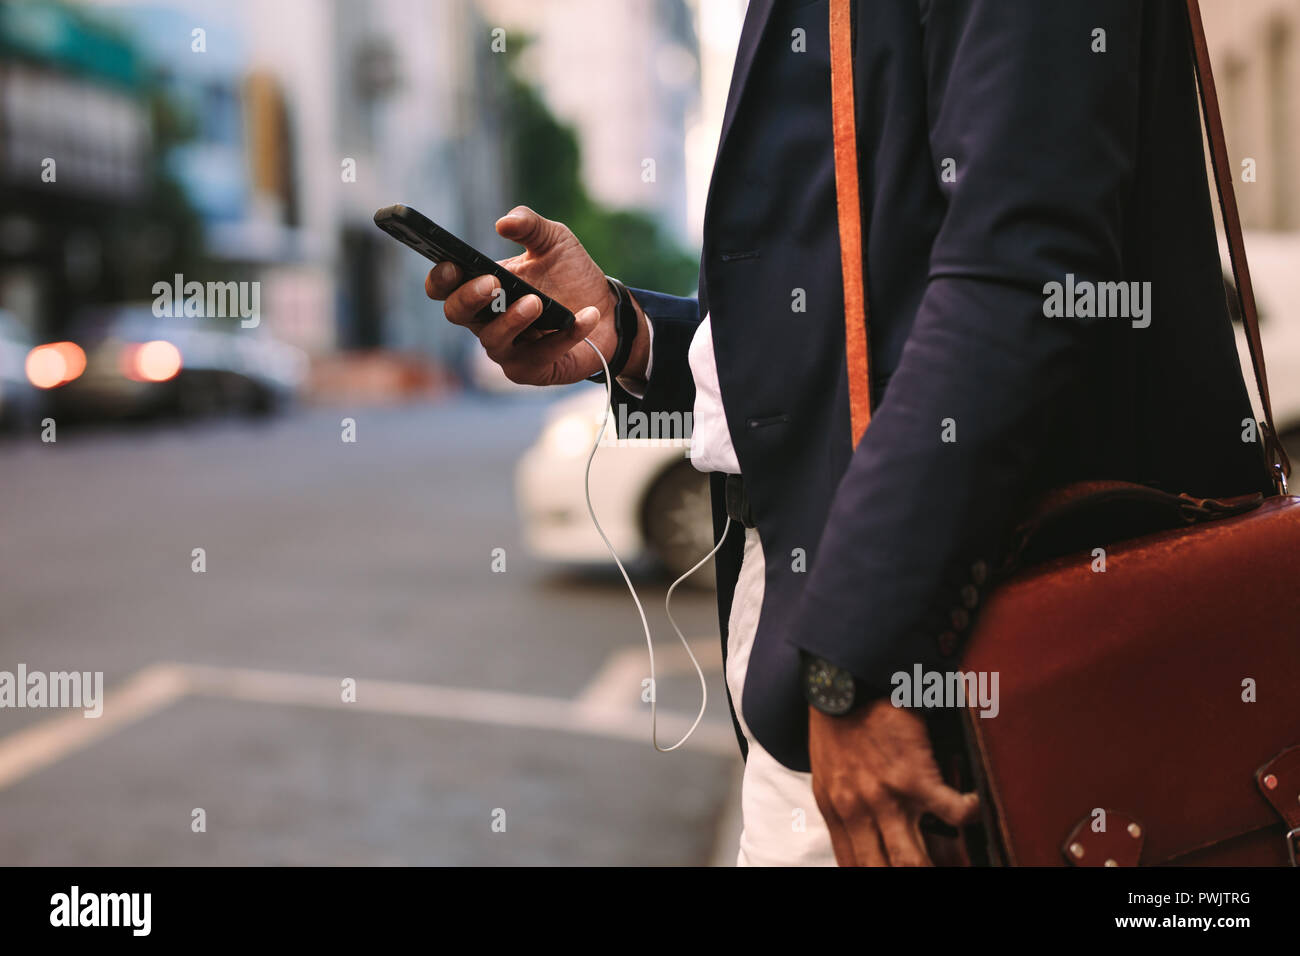 Ritagliato shot di imprenditore passeggiate all'aperto utilizzando il telefono cellulare. Uomo in tuta con borsetta a camminare su una strada di città con il cellulare in mano. Foto Stock